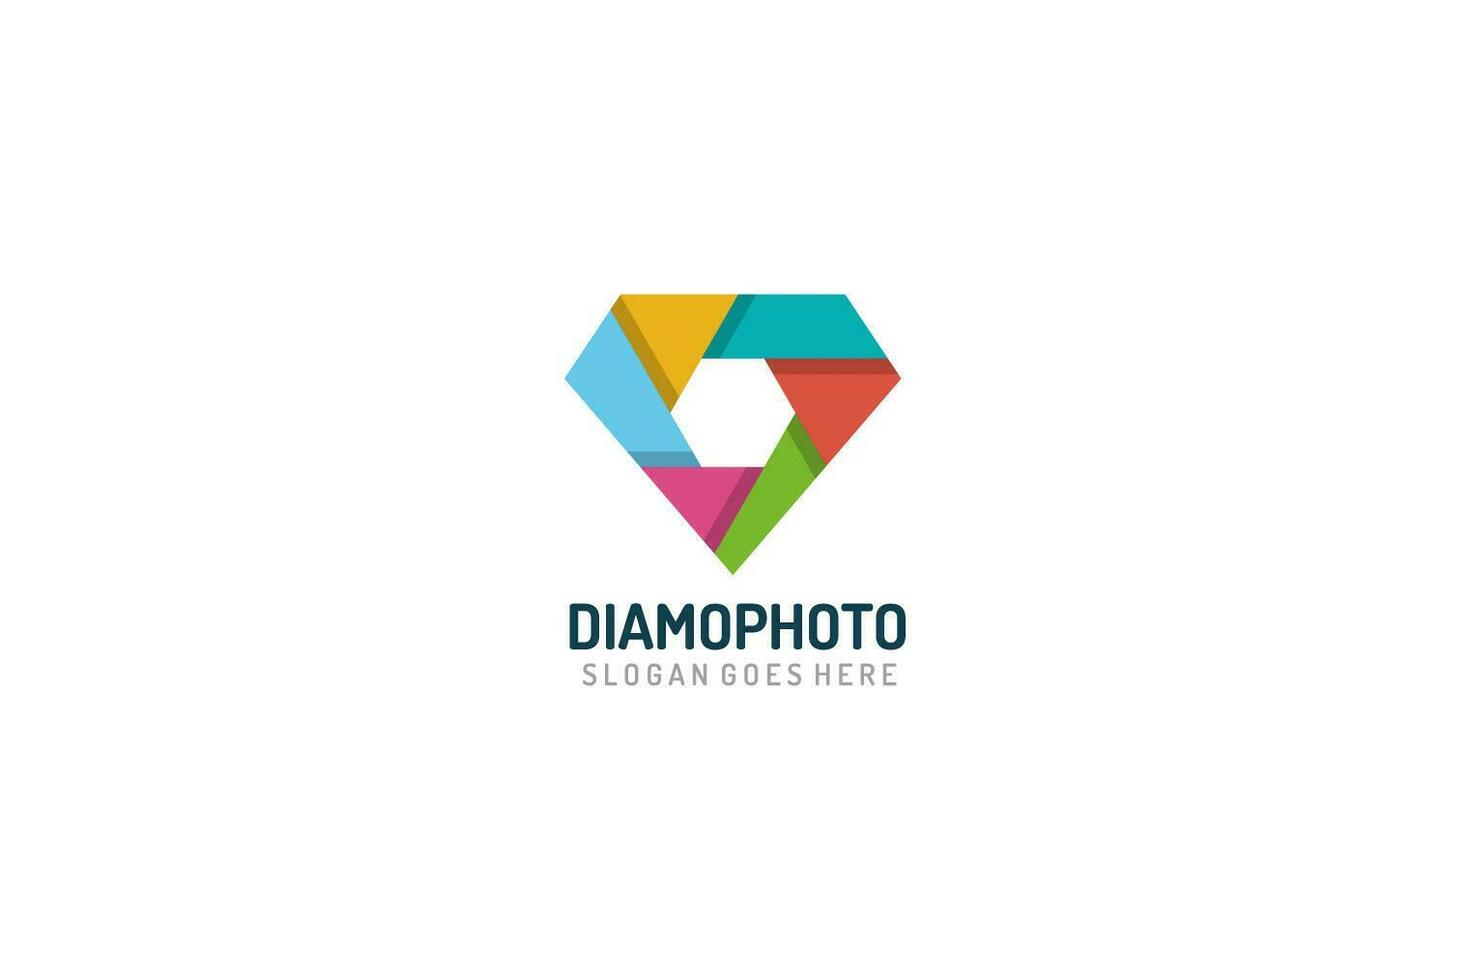 Diamond Photography-logo vector